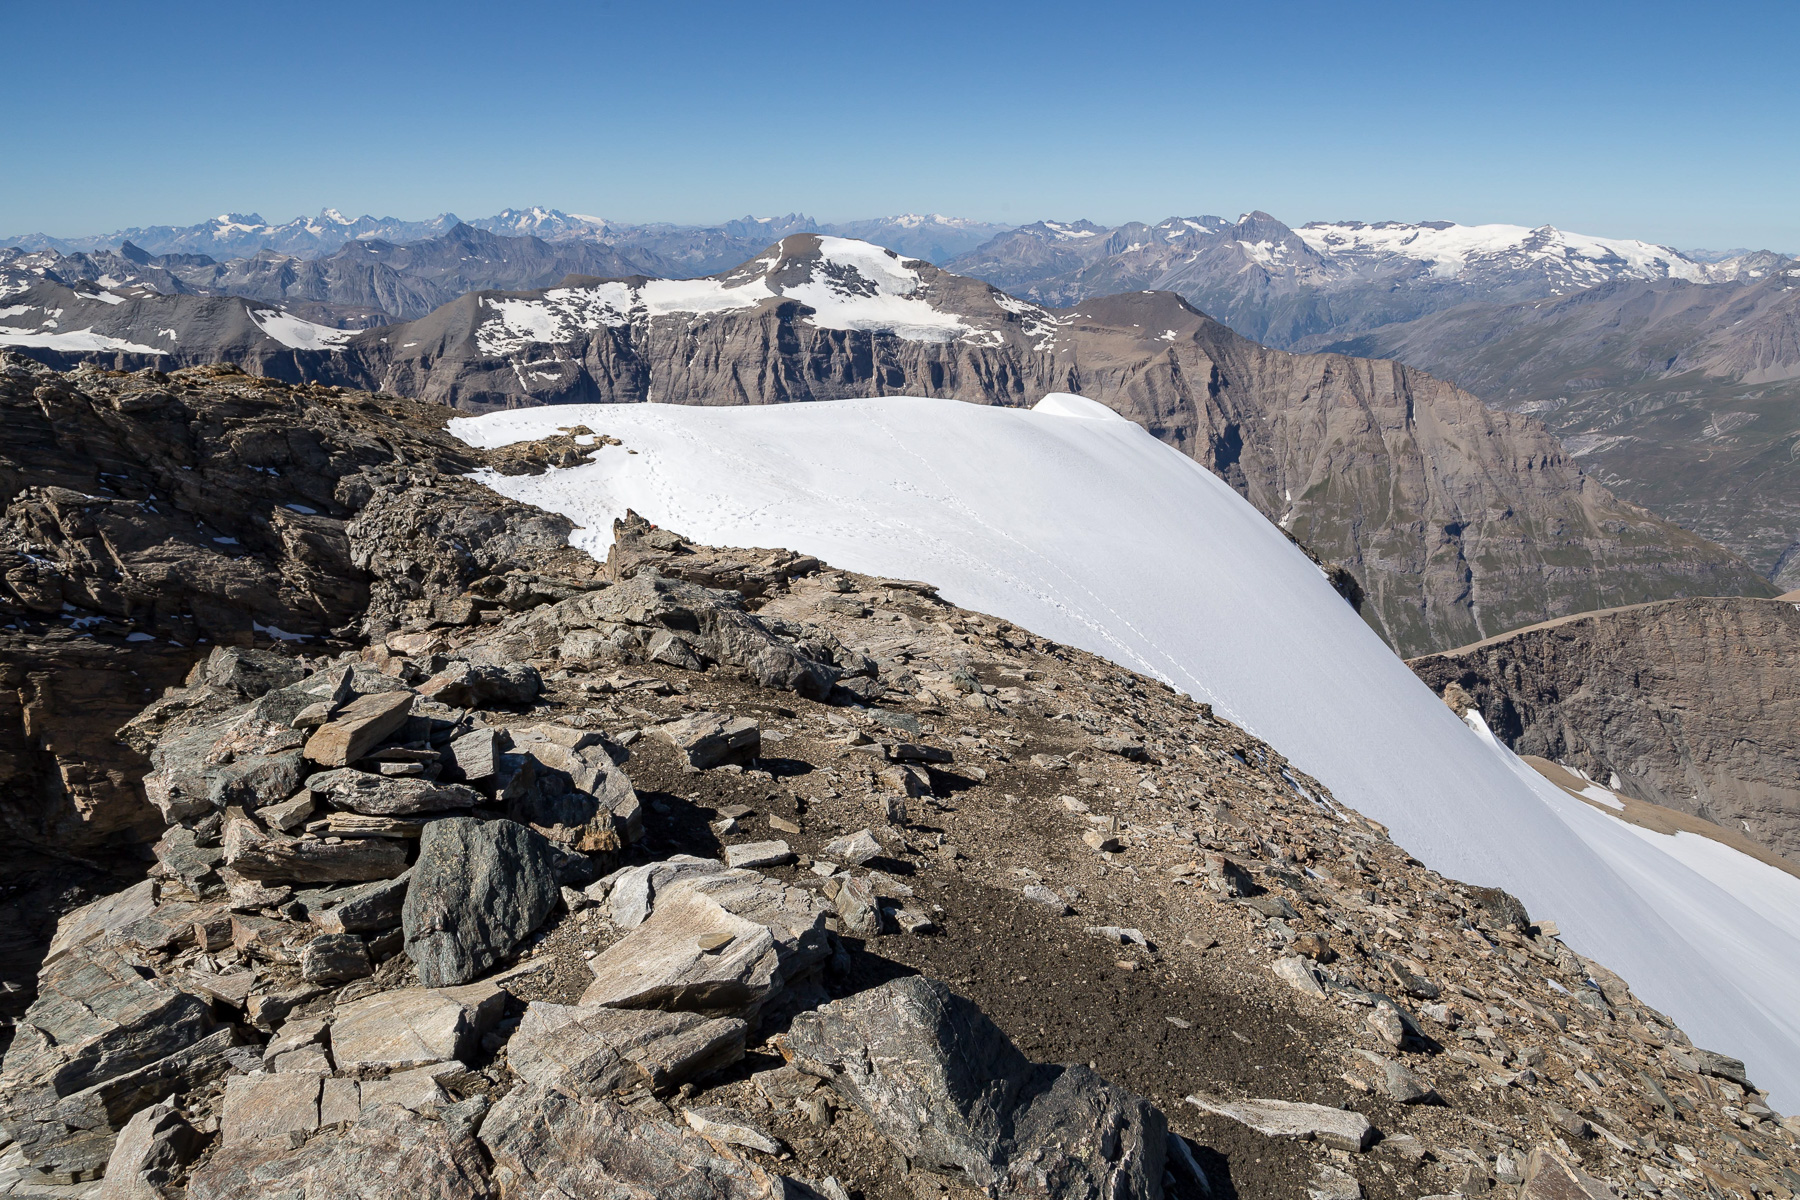 Die letzten steilen Aufstiegsmeter, dahinter die Pointe de Ronce (3.612 m). Am Horizont Mont Pelvoux, Barre des Écrins, La Meije, Aiguilles d'Arves, Pic de l'Etendard, Dent Parrachée und die Glaciers de la Vanoise.